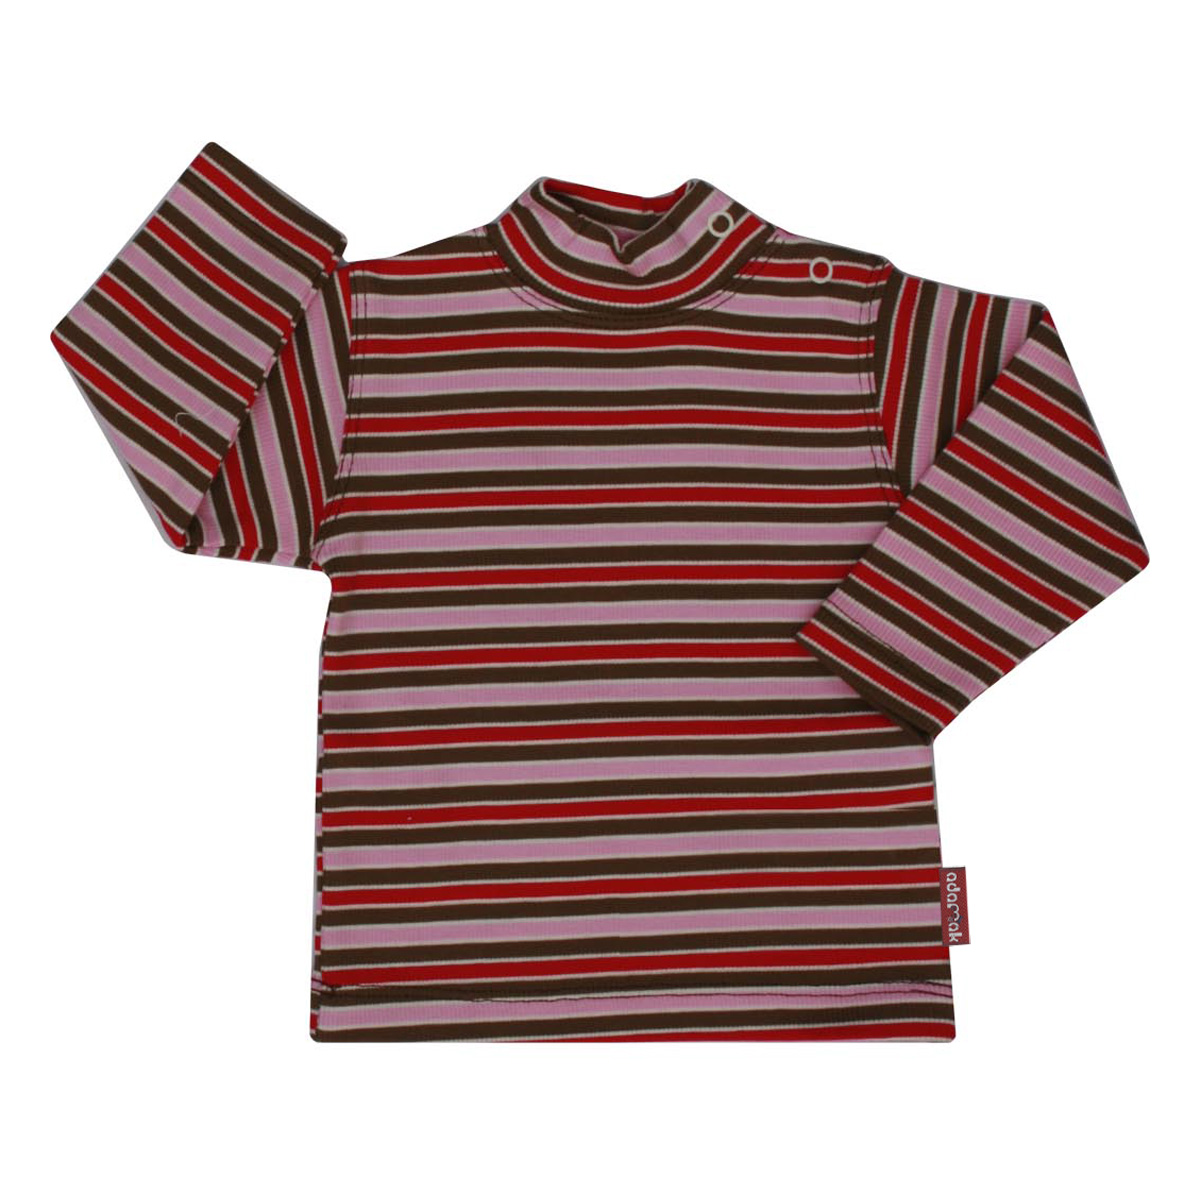 تی شرت آدمک طرح راه راه کد 17-143201 -  - 1